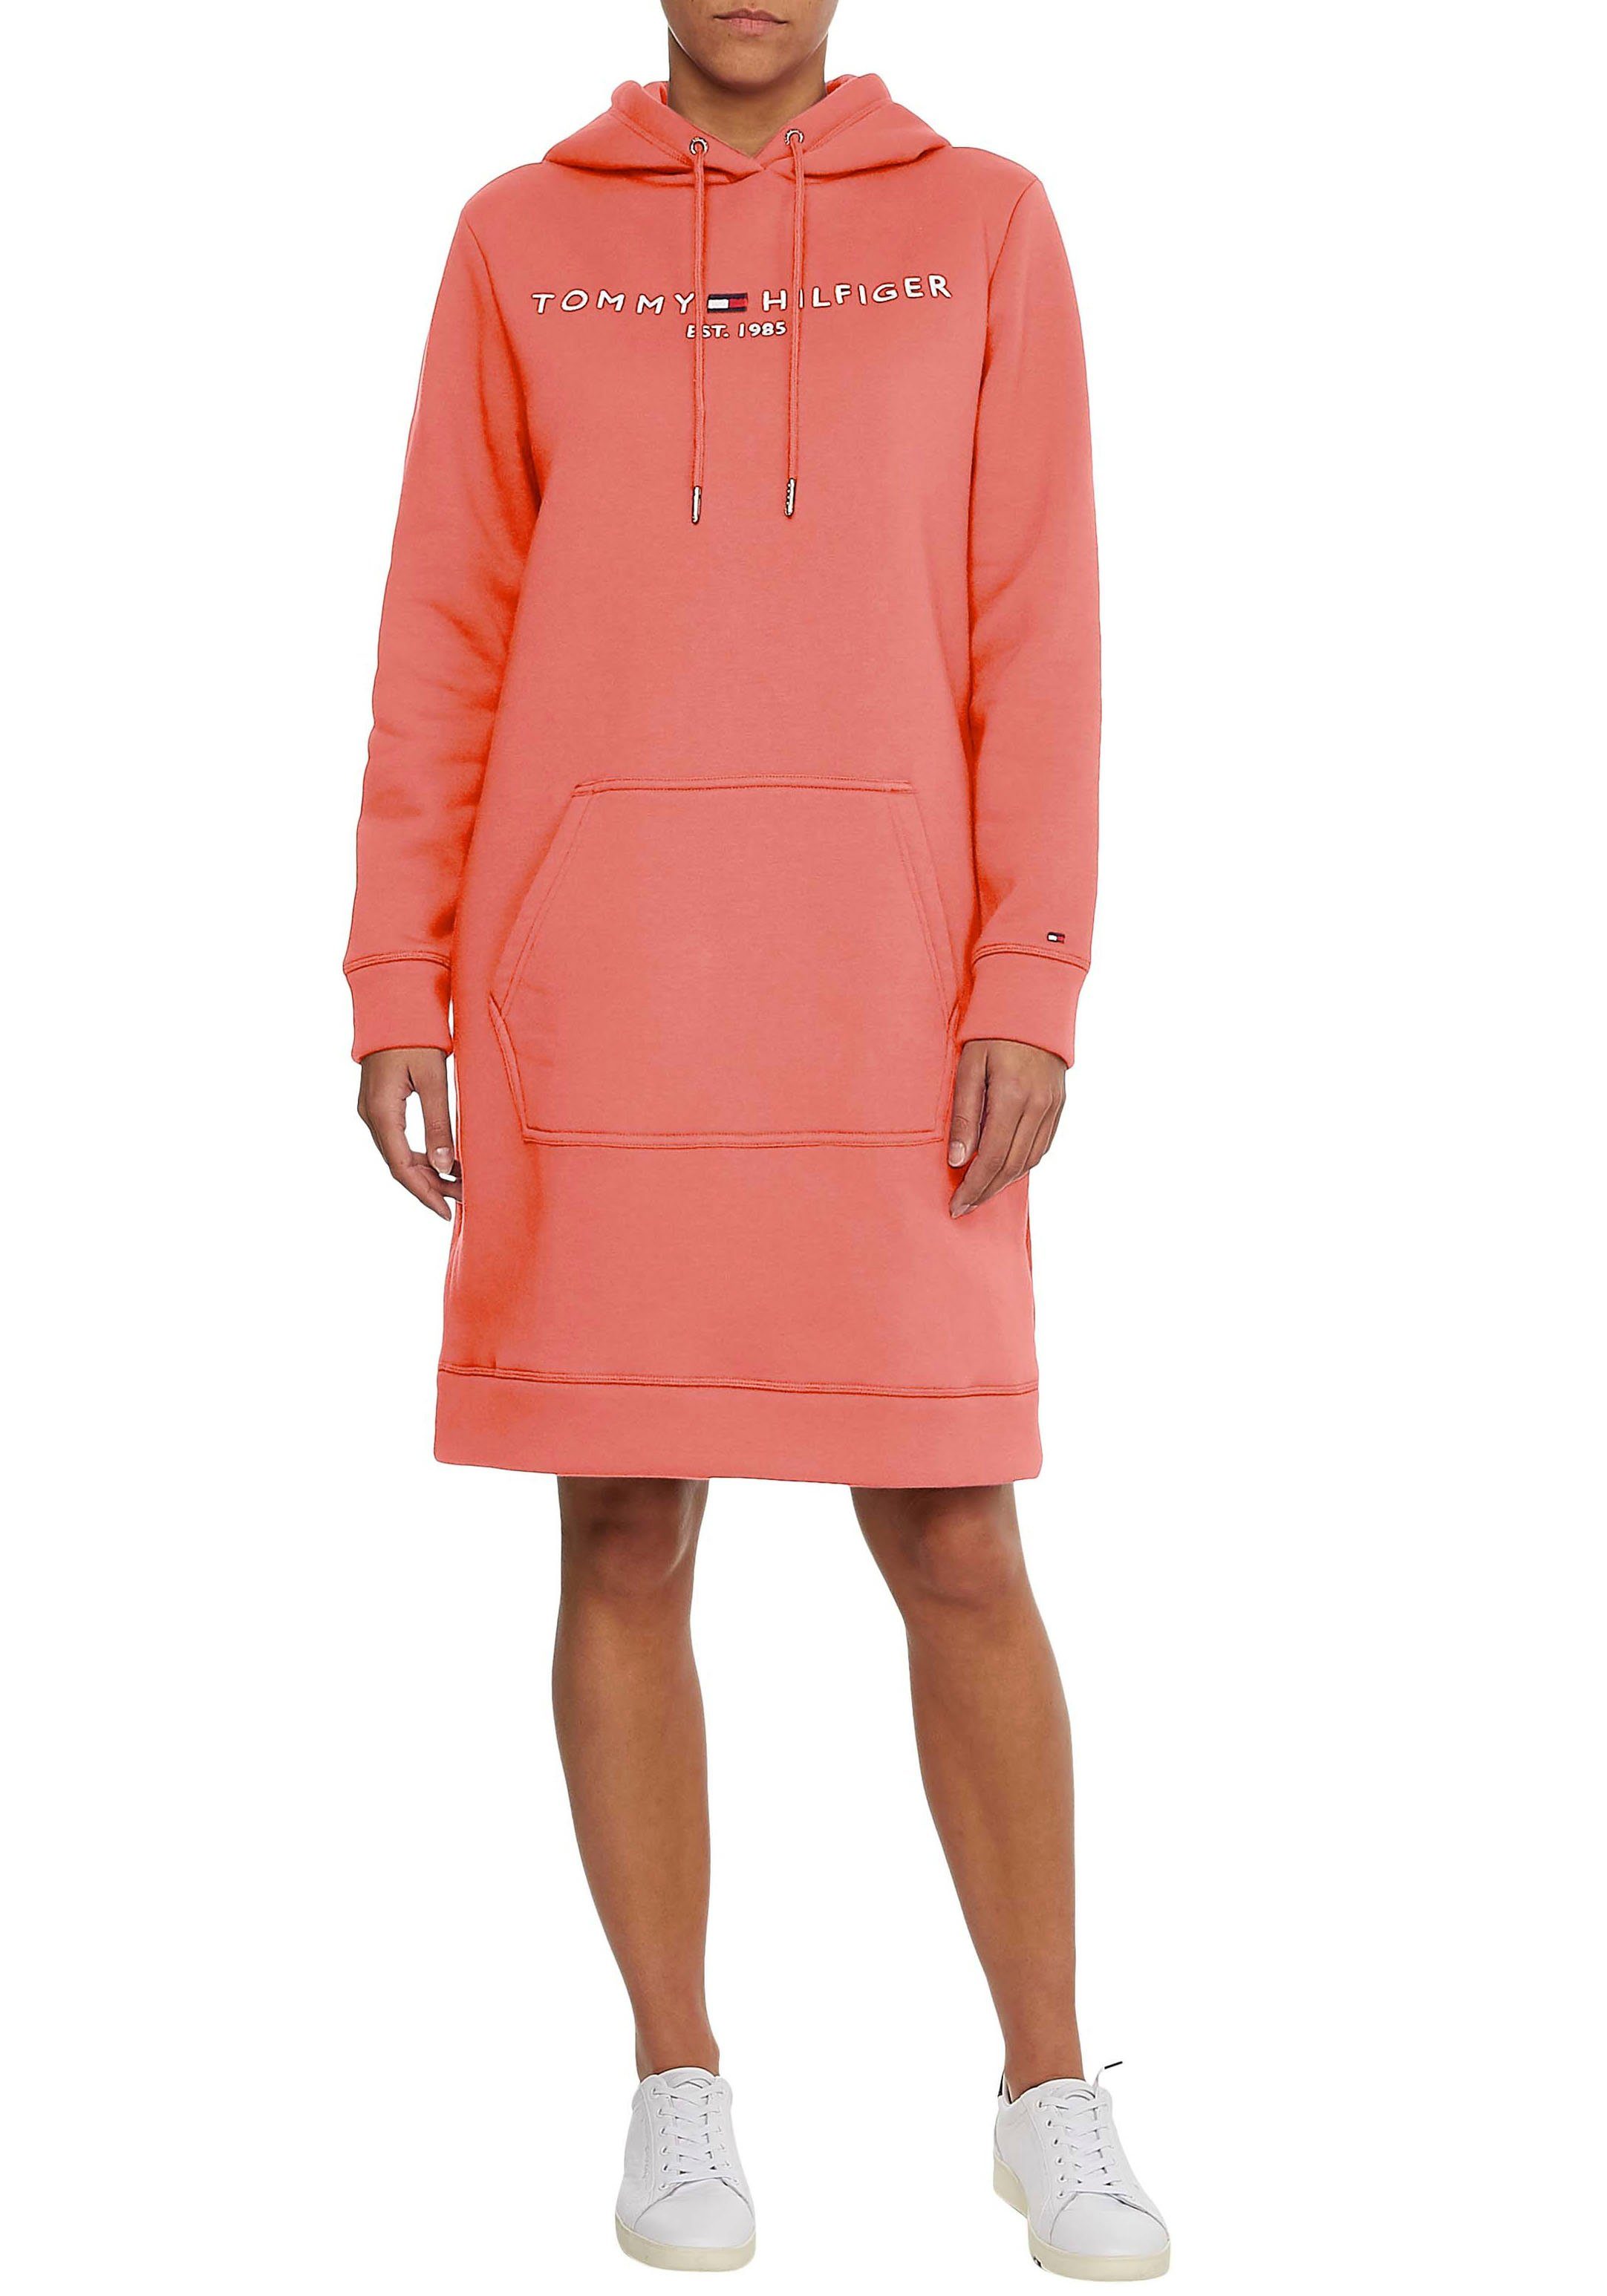 Sweatkleider online kaufen » Pullover Kleider | OTTO